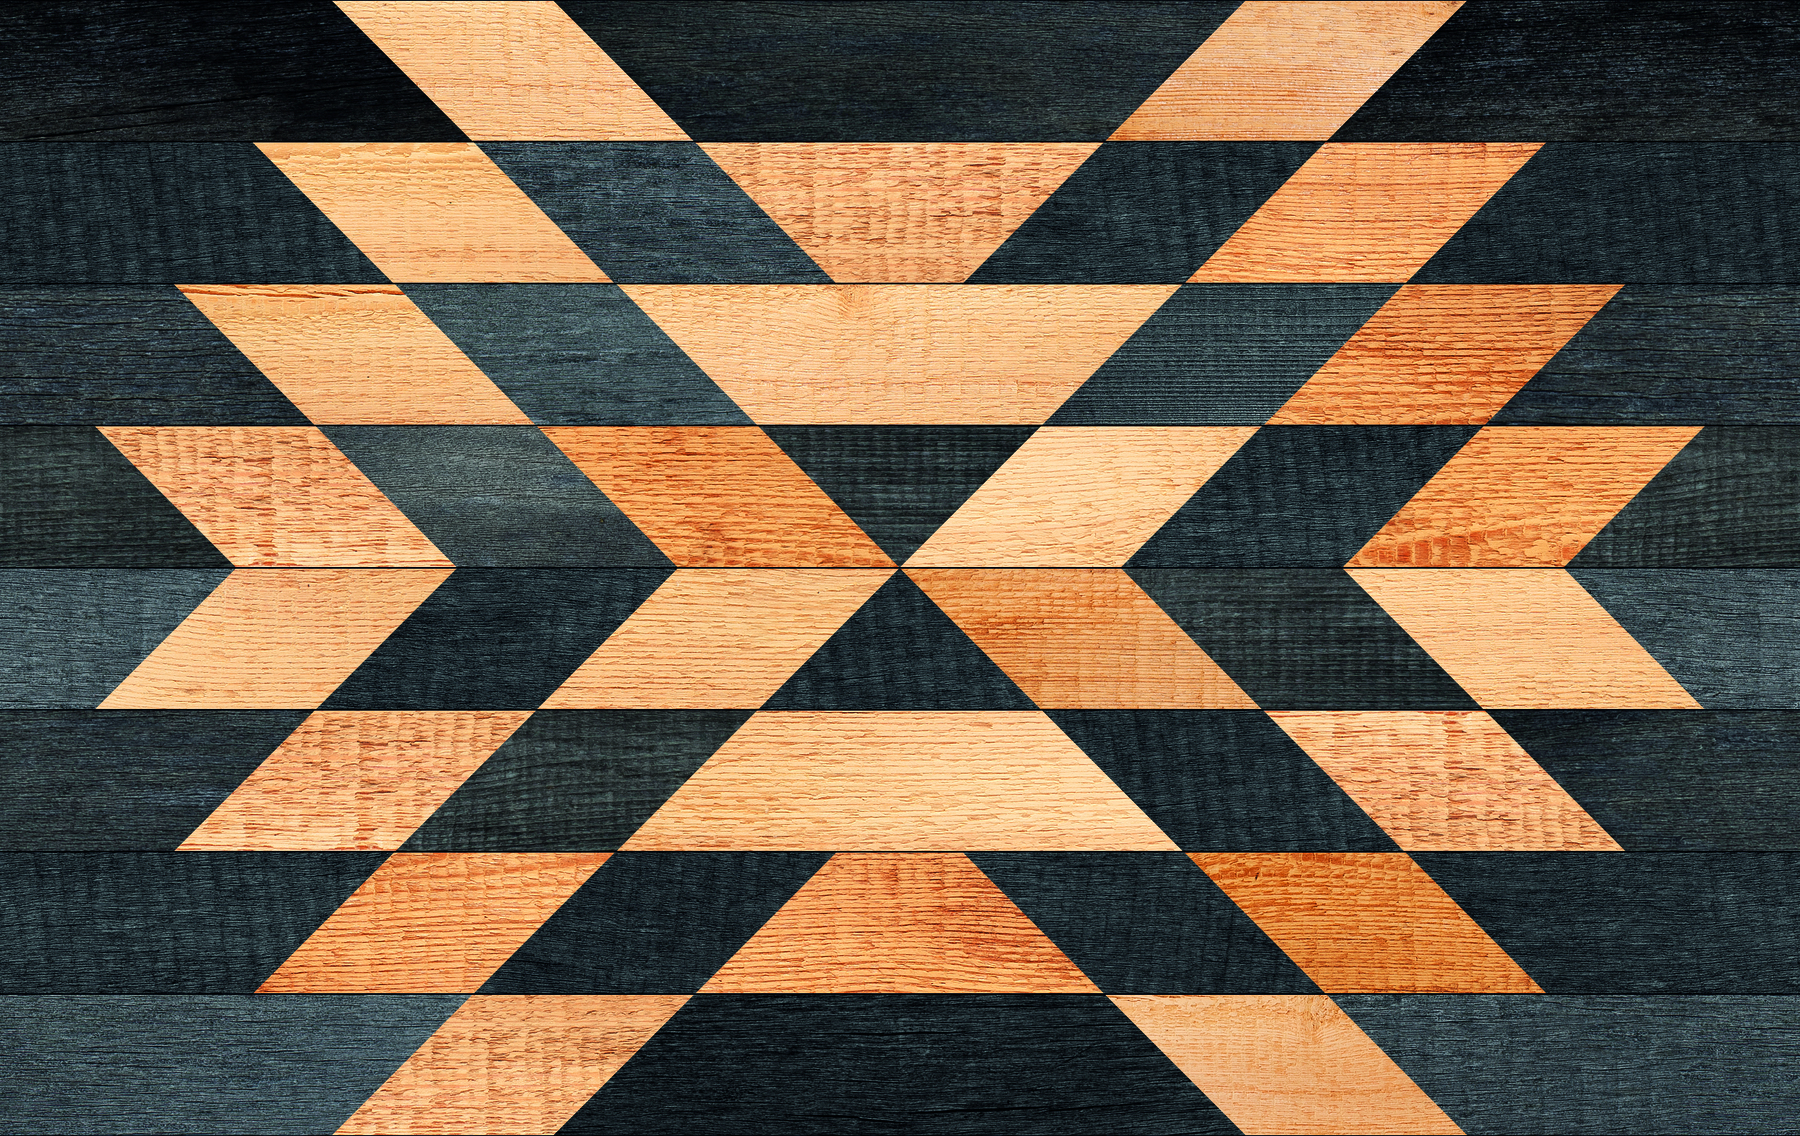 Fotografia. Retângulo preto na horizontal com quatro fileiras de paralelogramos na cor laranja na parte superior e quatro fileiras na parte inferior.